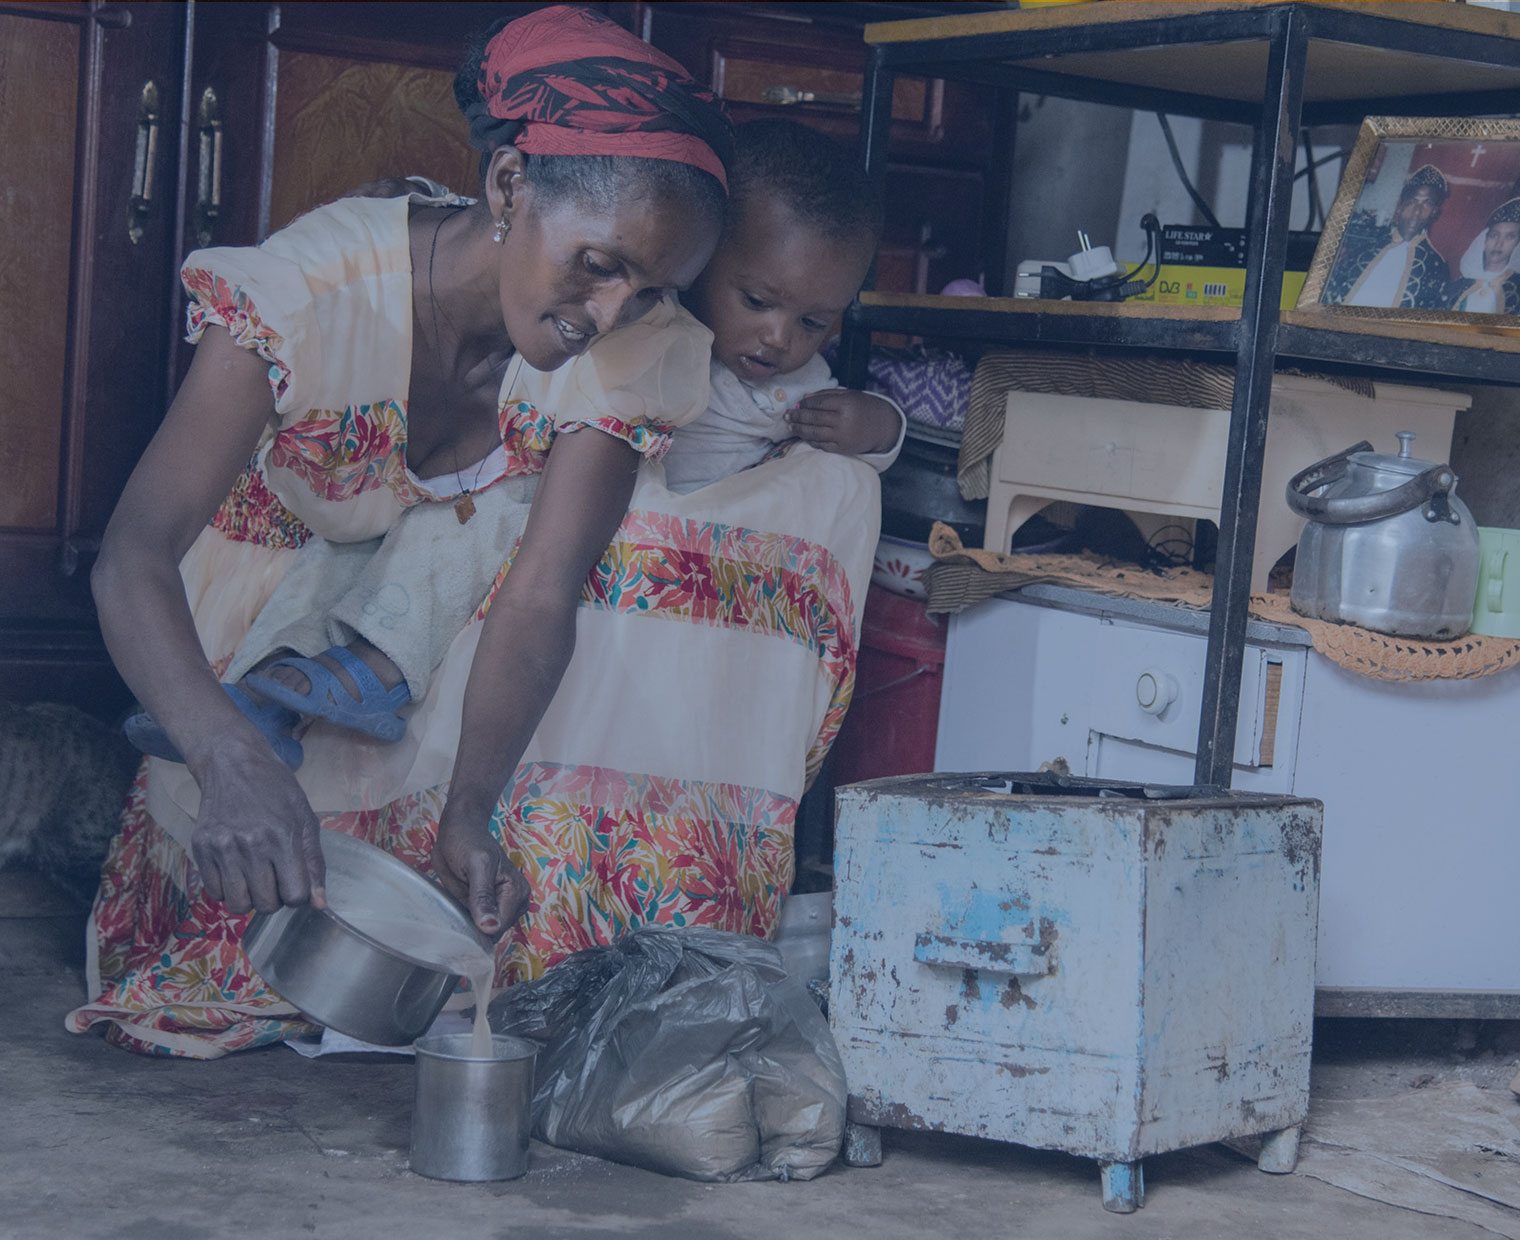 에티오피아 엄마 에브레헷이 아이를 엎고 음식을 만들 고 있다.